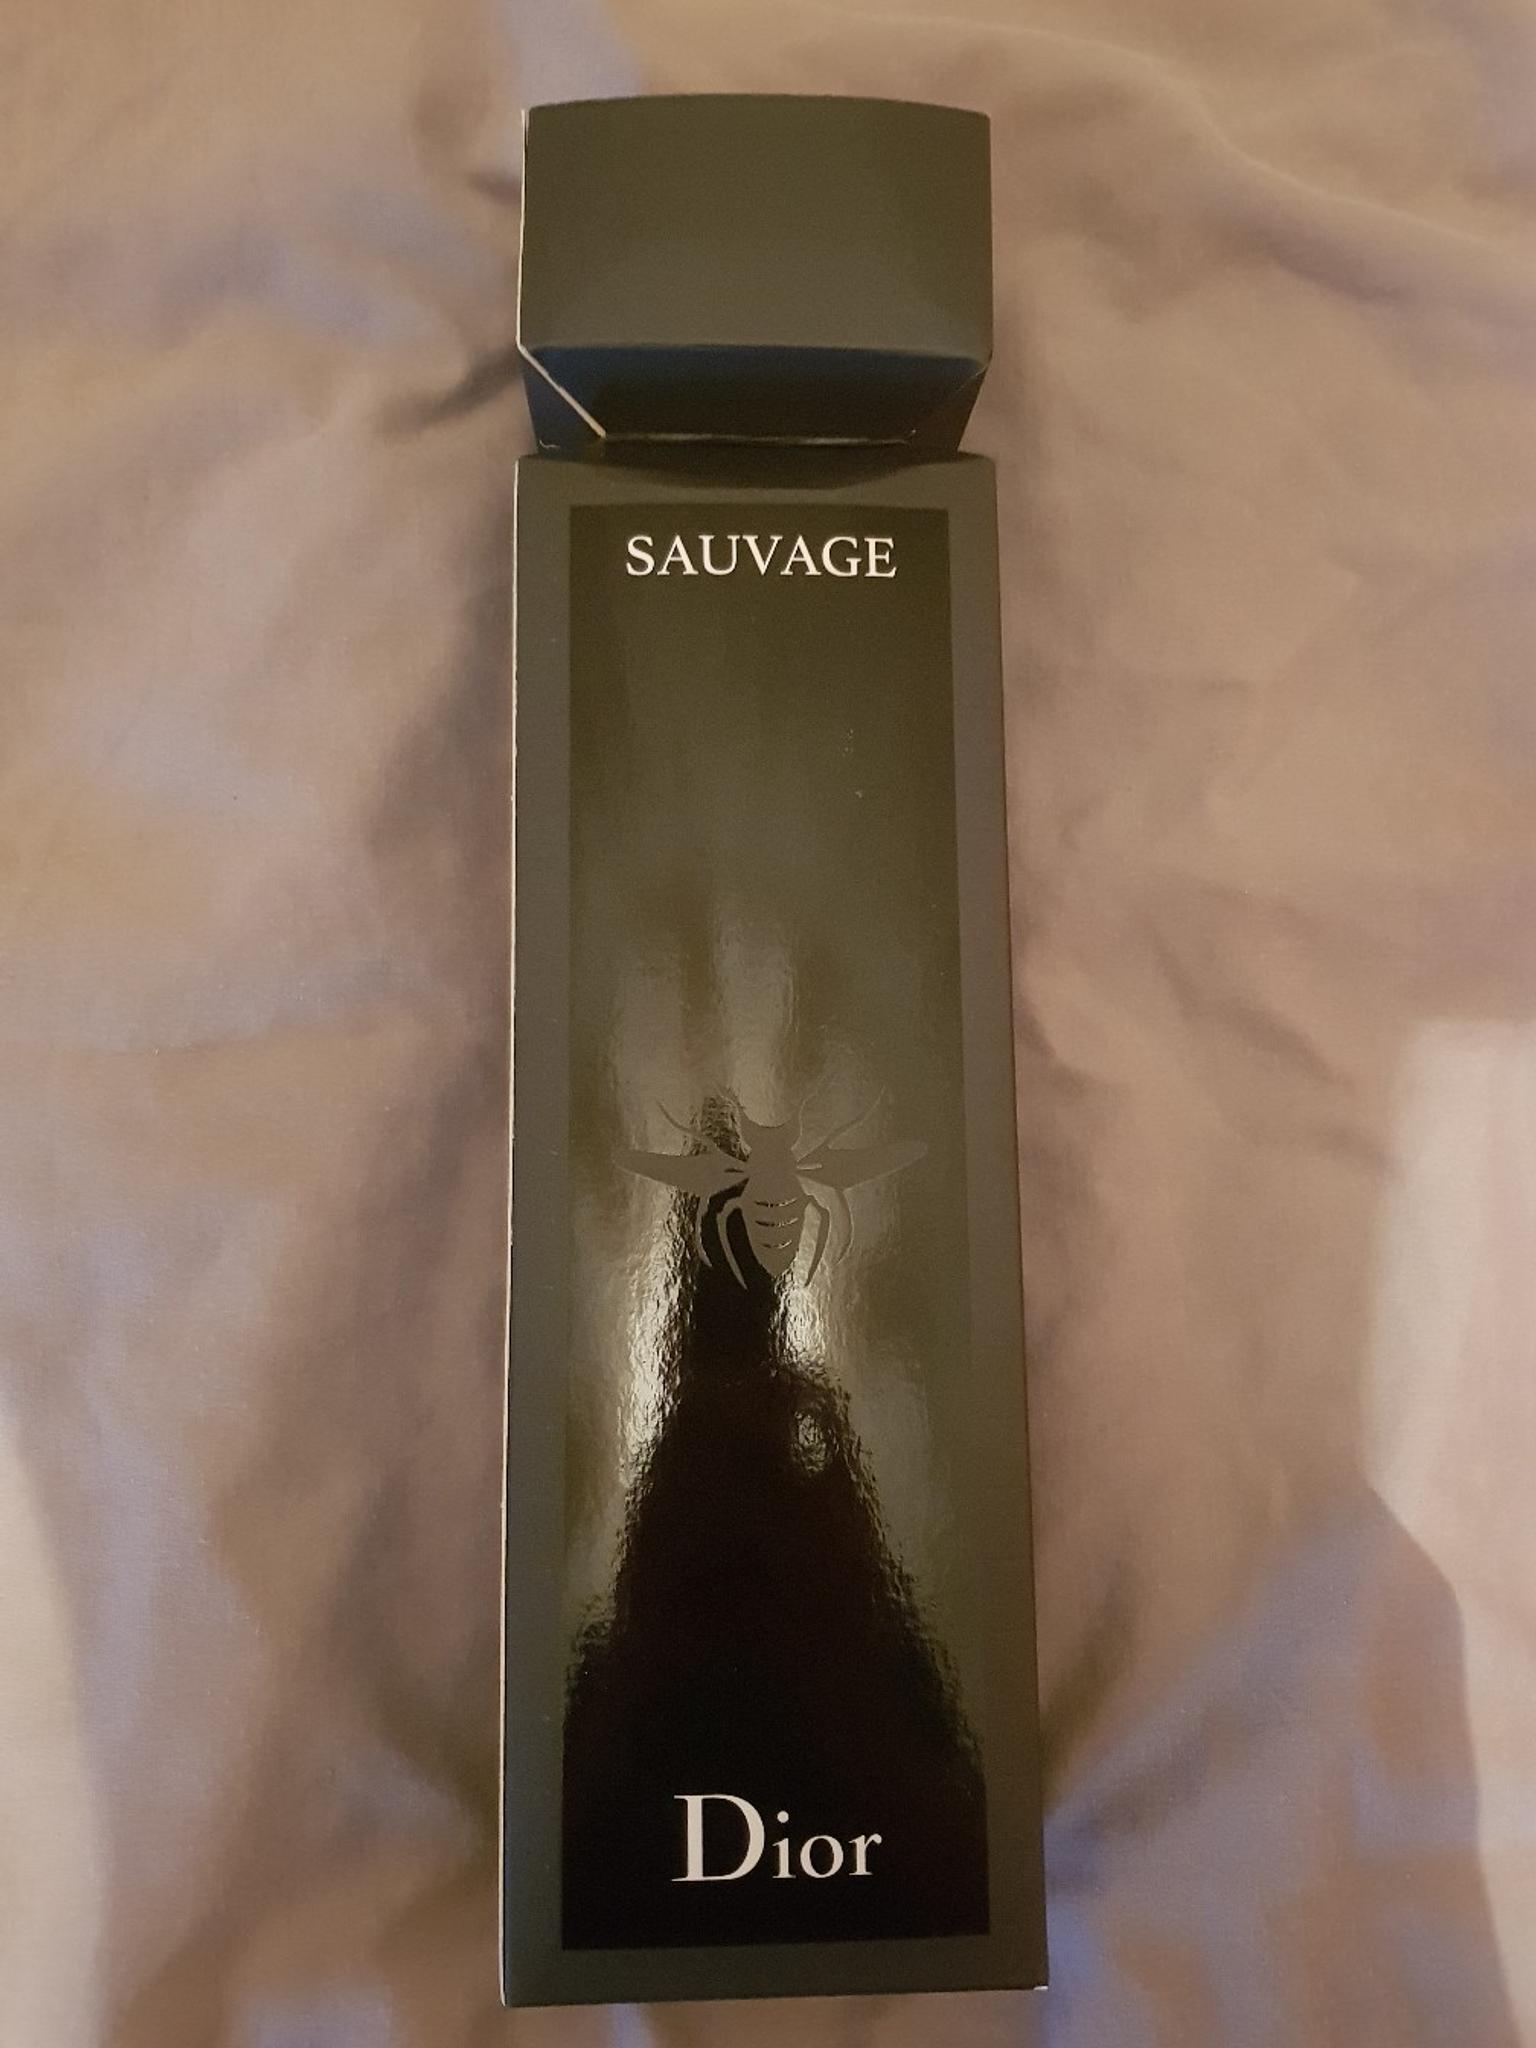 dior sauvage gift set with socks